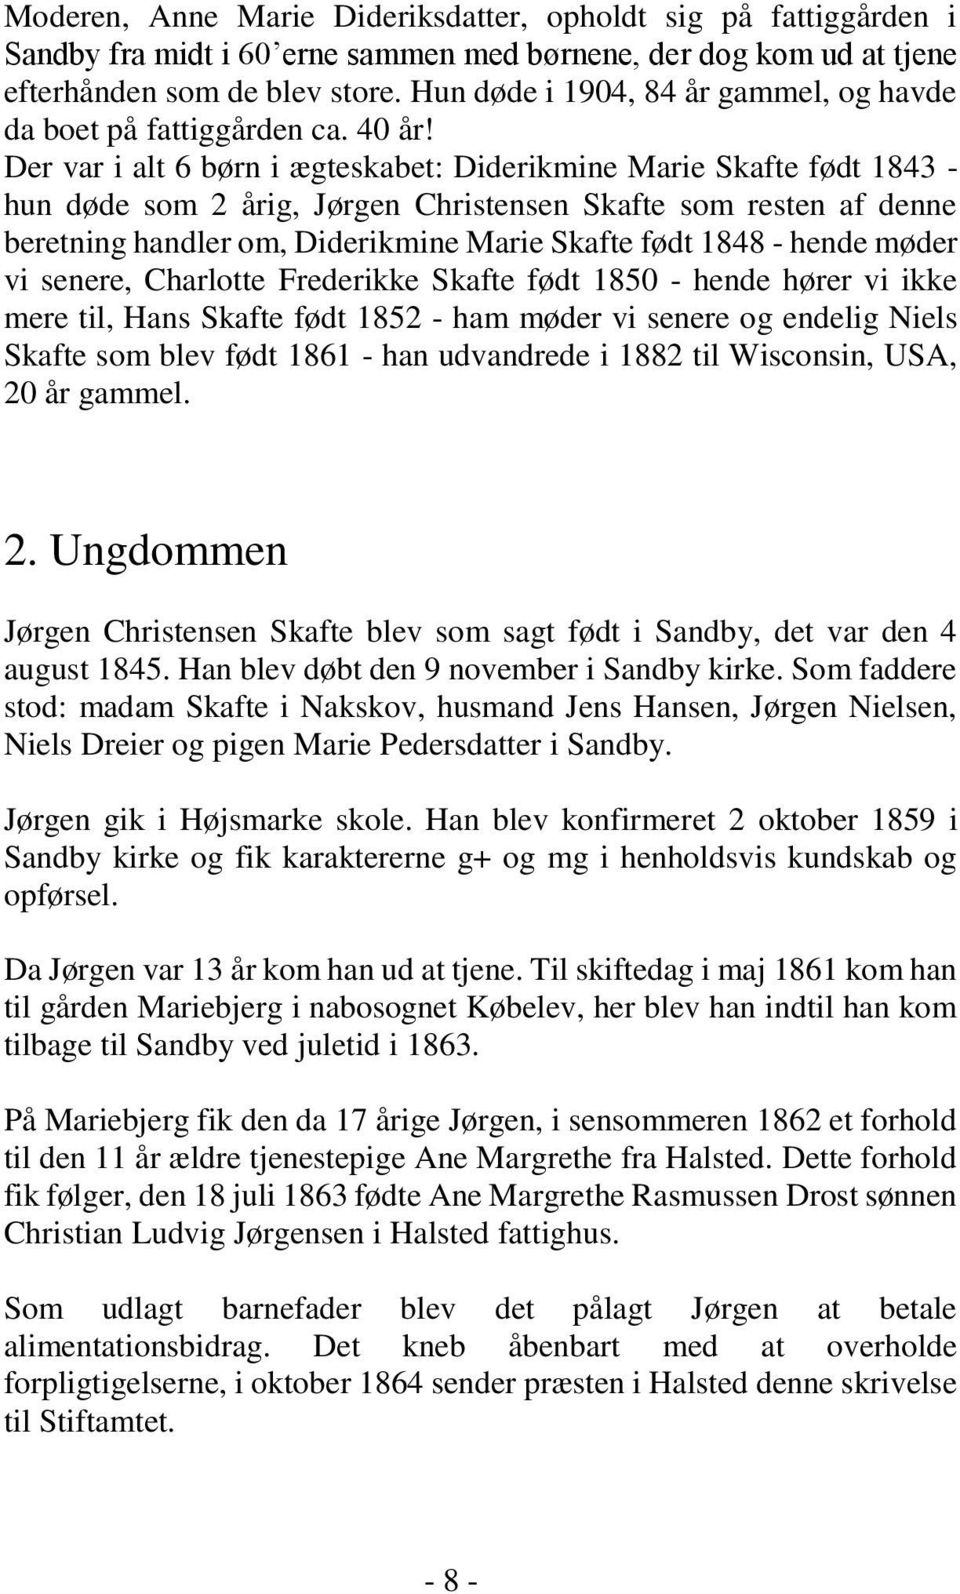 Der var i alt 6 børn i ægteskabet: Diderikmine Marie Skafte født 1843 - hun døde som 2 årig, Jørgen Christensen Skafte som resten af denne beretning handler om, Diderikmine Marie Skafte født 1848 -